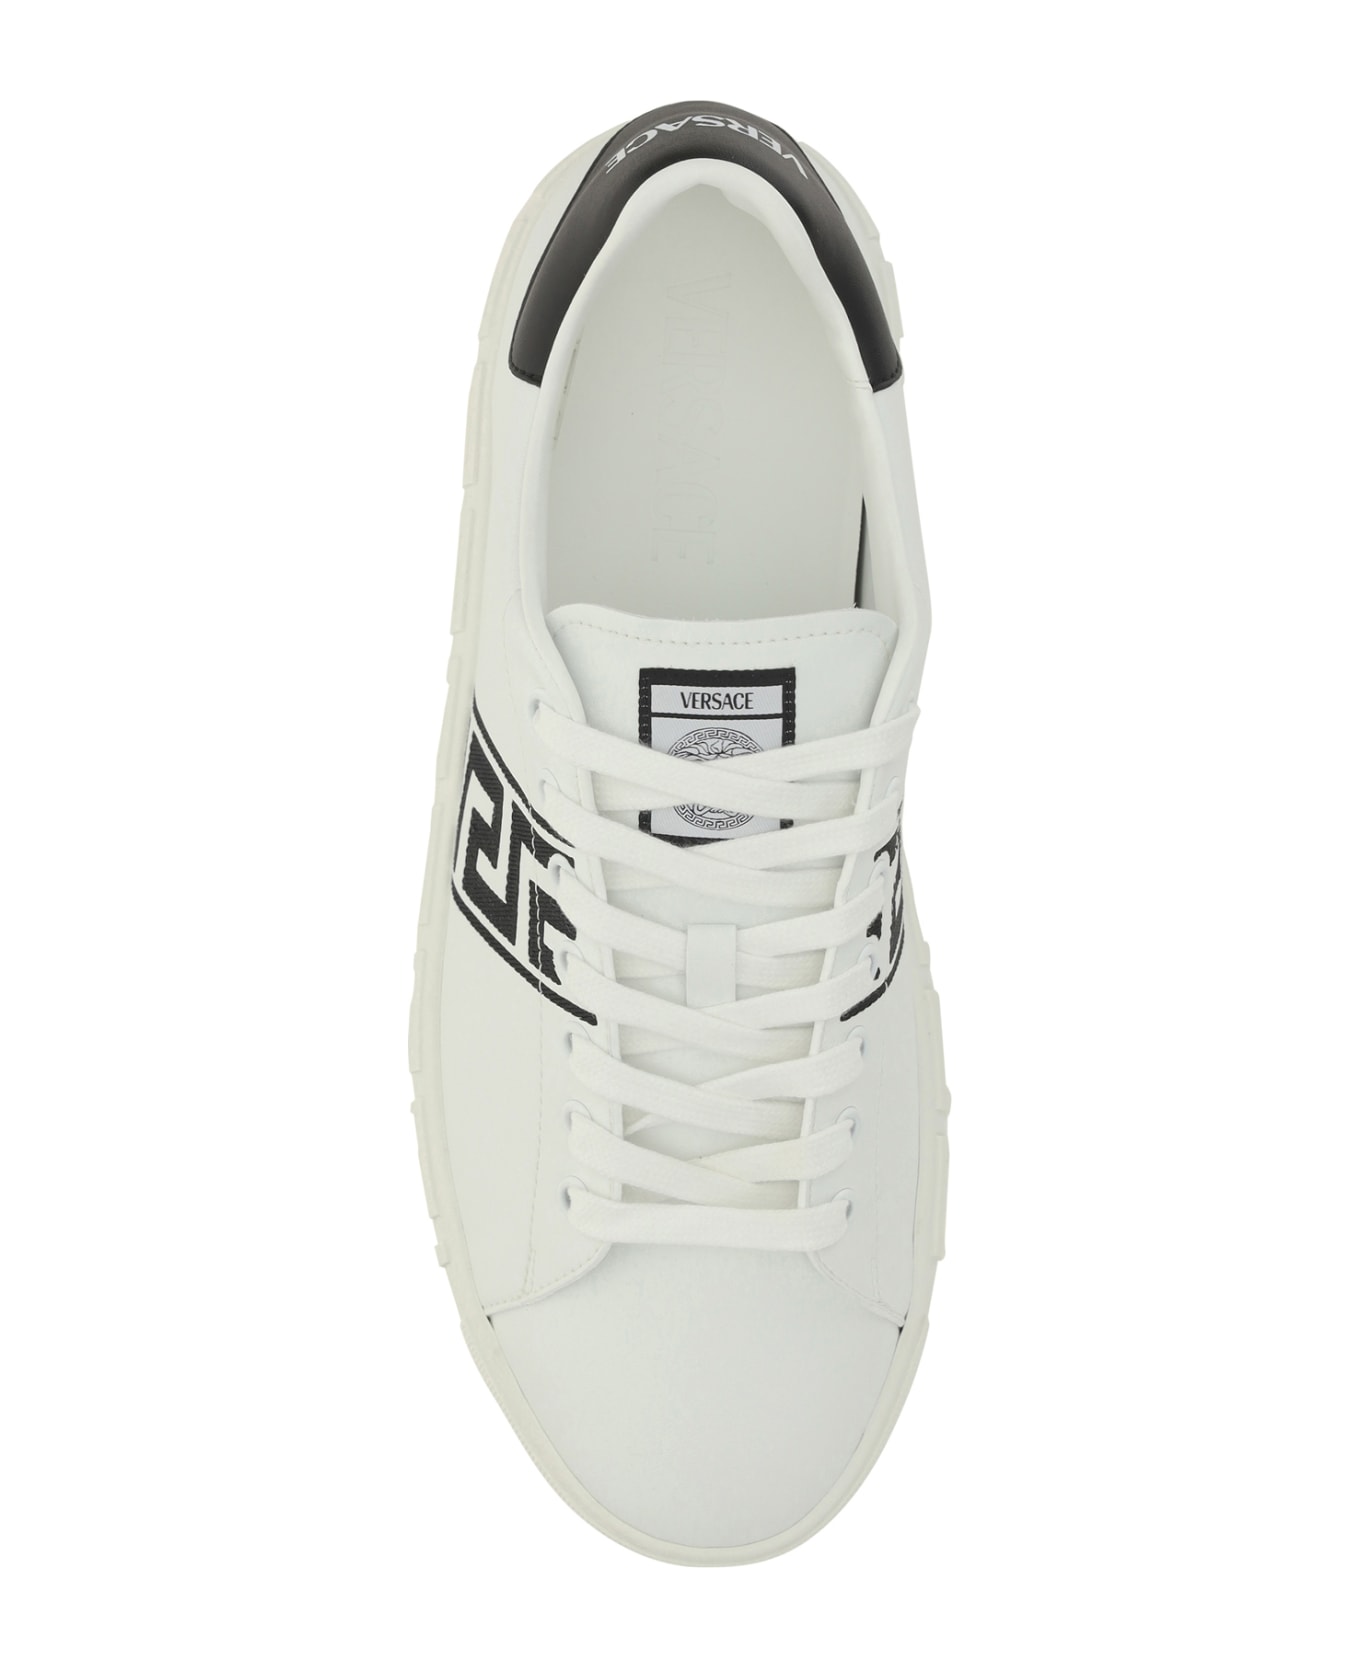 Versace Low Top Sneakers - WHITE/BLACK